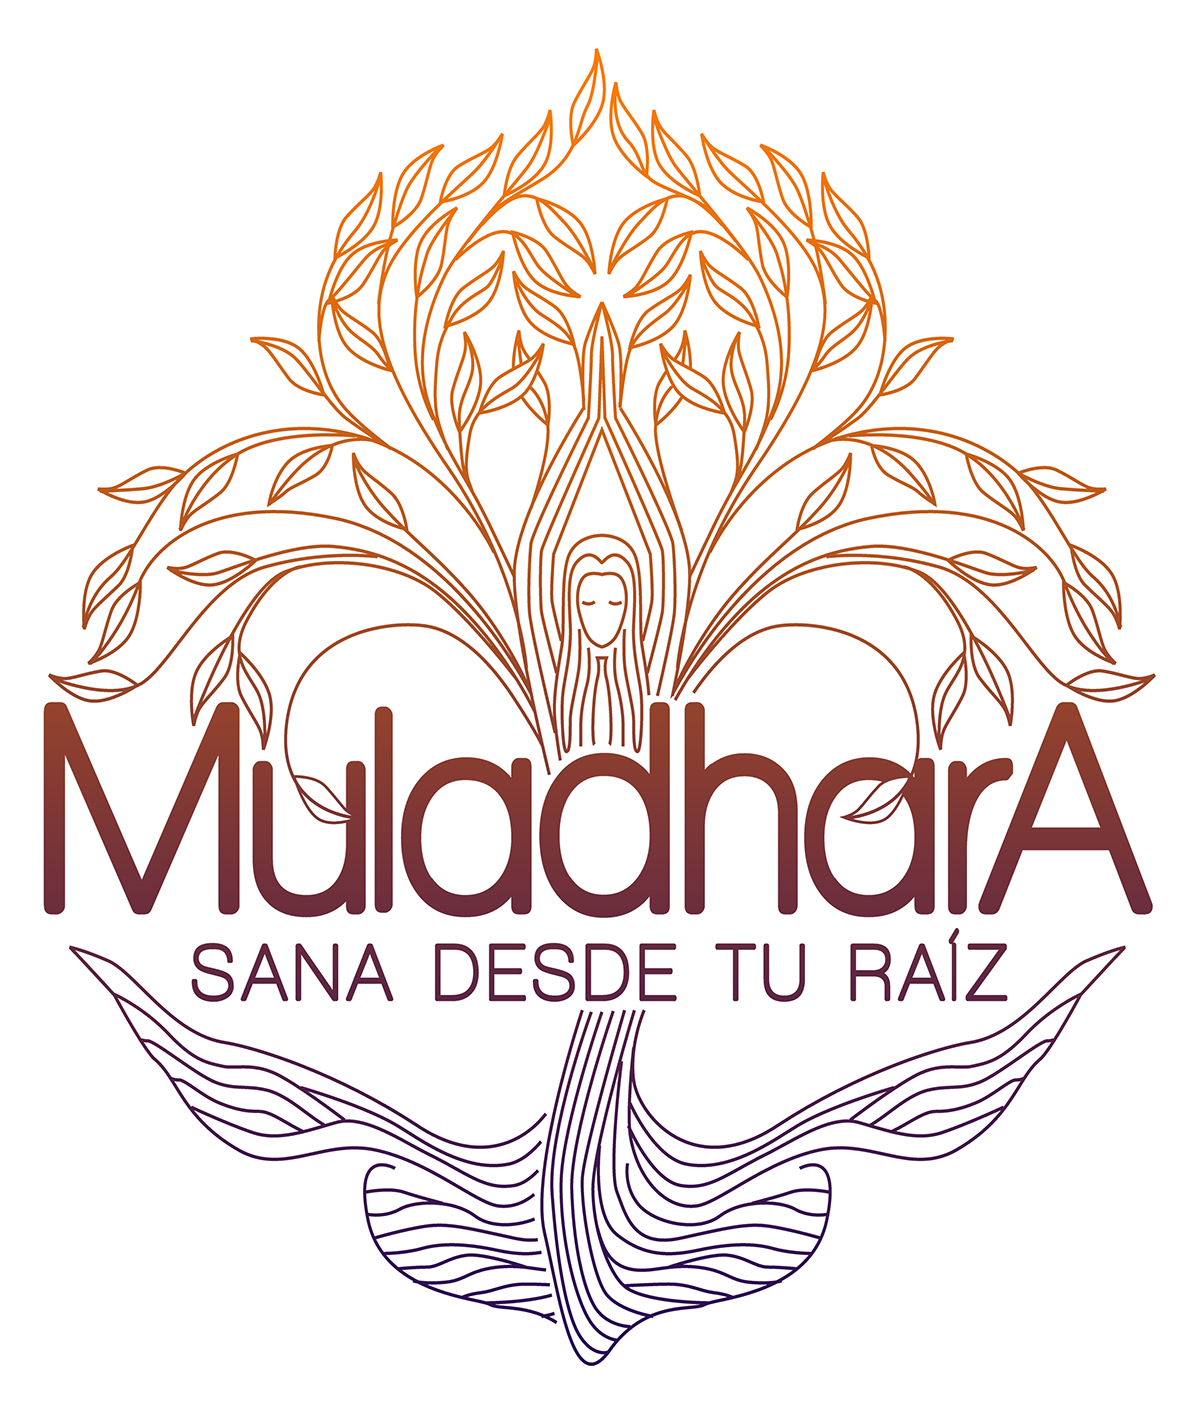 Muladhara chacra reiki tarot centro de estetica Spa logo design Flores de bach natural masajes raiz relajacion centro espiritual Yoga